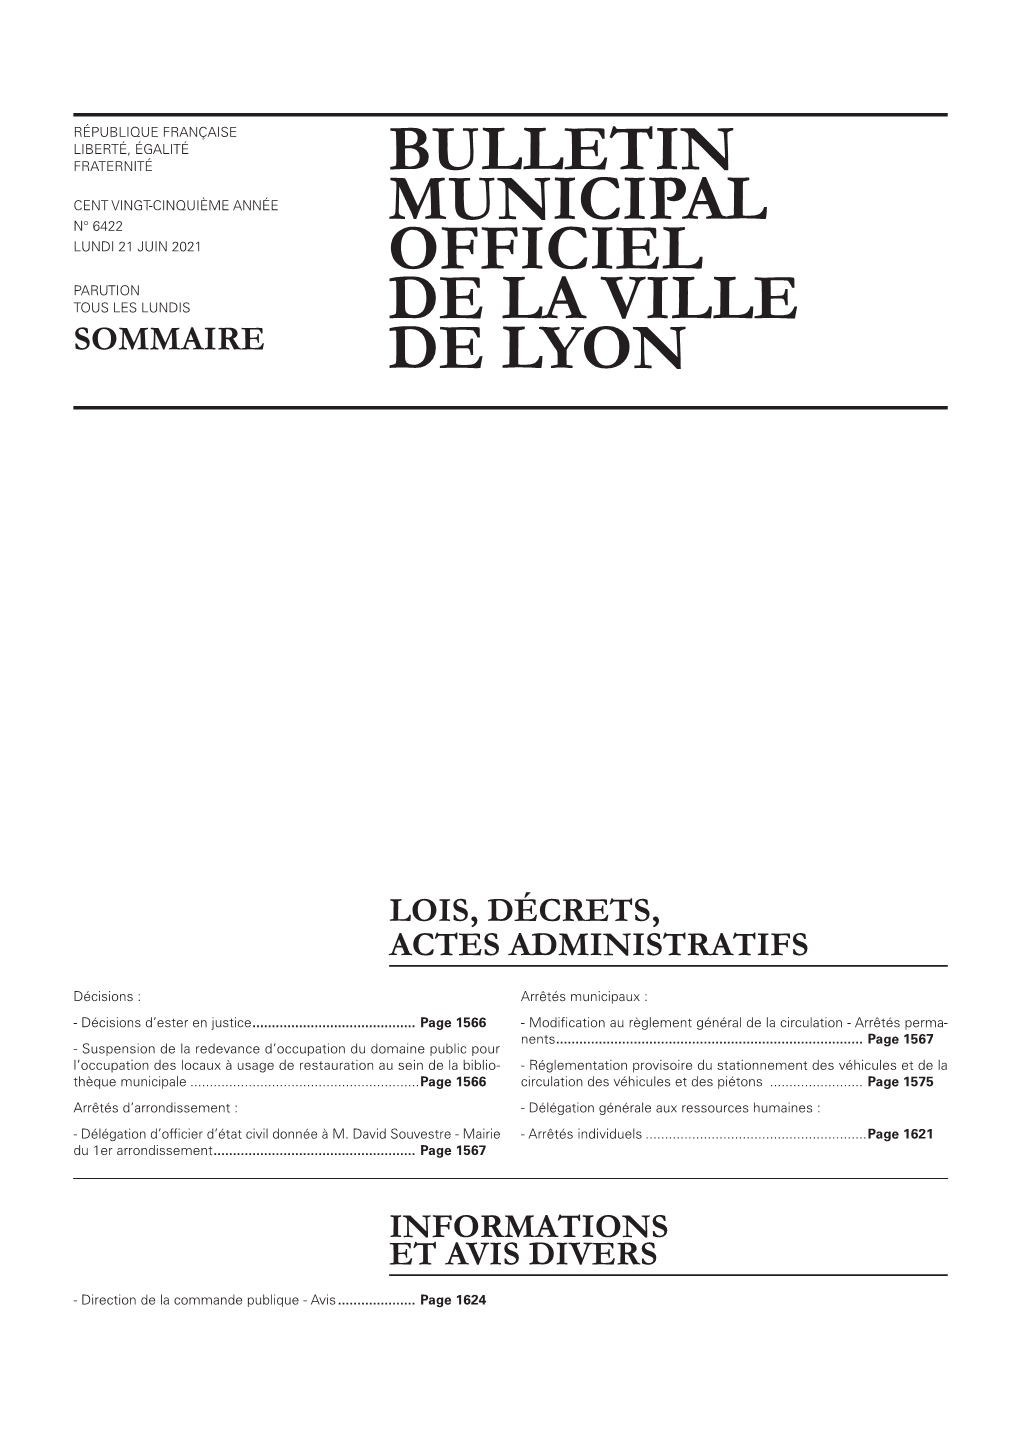 BULLETIN MUNICIPAL OFFICIEL DE LA VILLE DE LYON 21 Juin 2021 LOIS, DÉCRETS, ACTES ADMINISTRATIFS